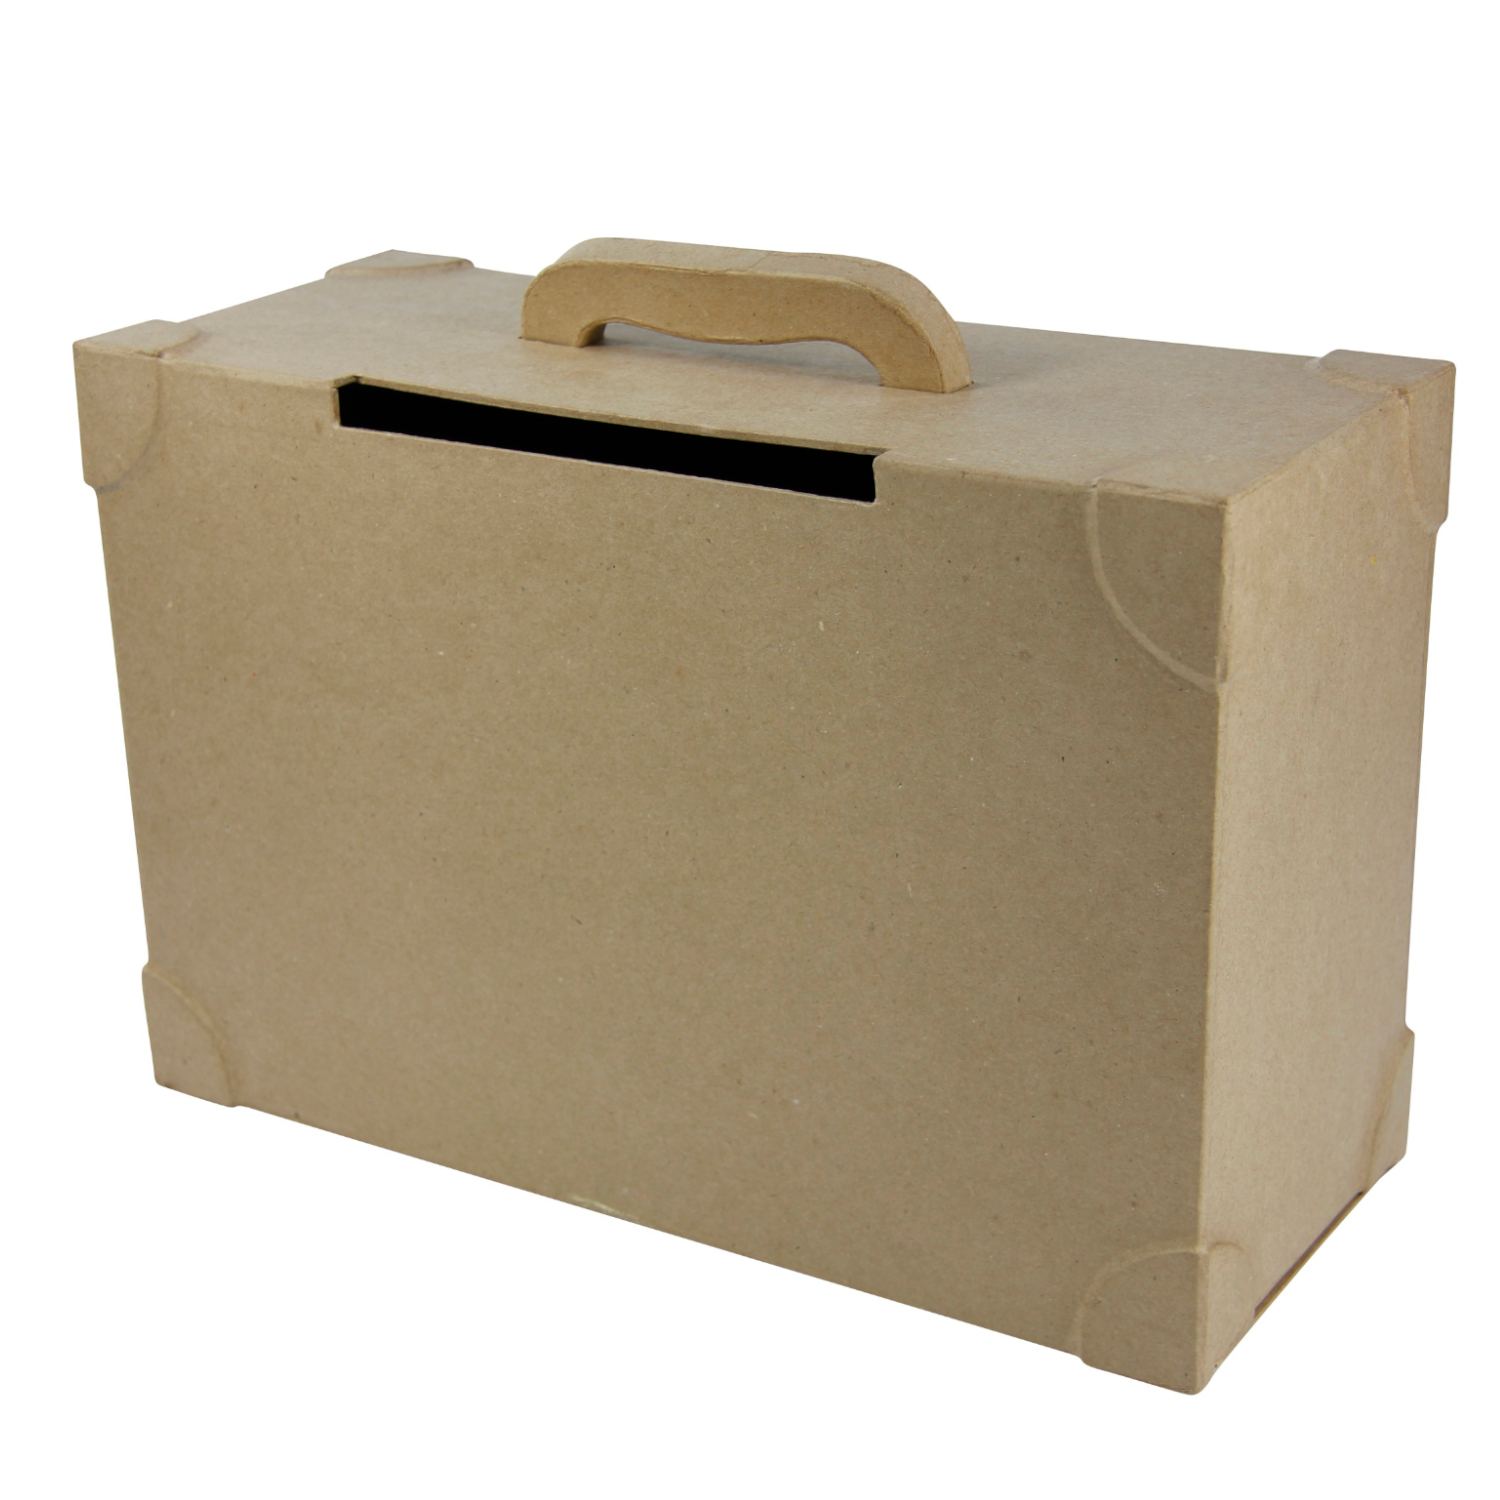 NEU Pappmaché Geschenkebox, Koffer, 14,5 x 36 x 23,5 cm